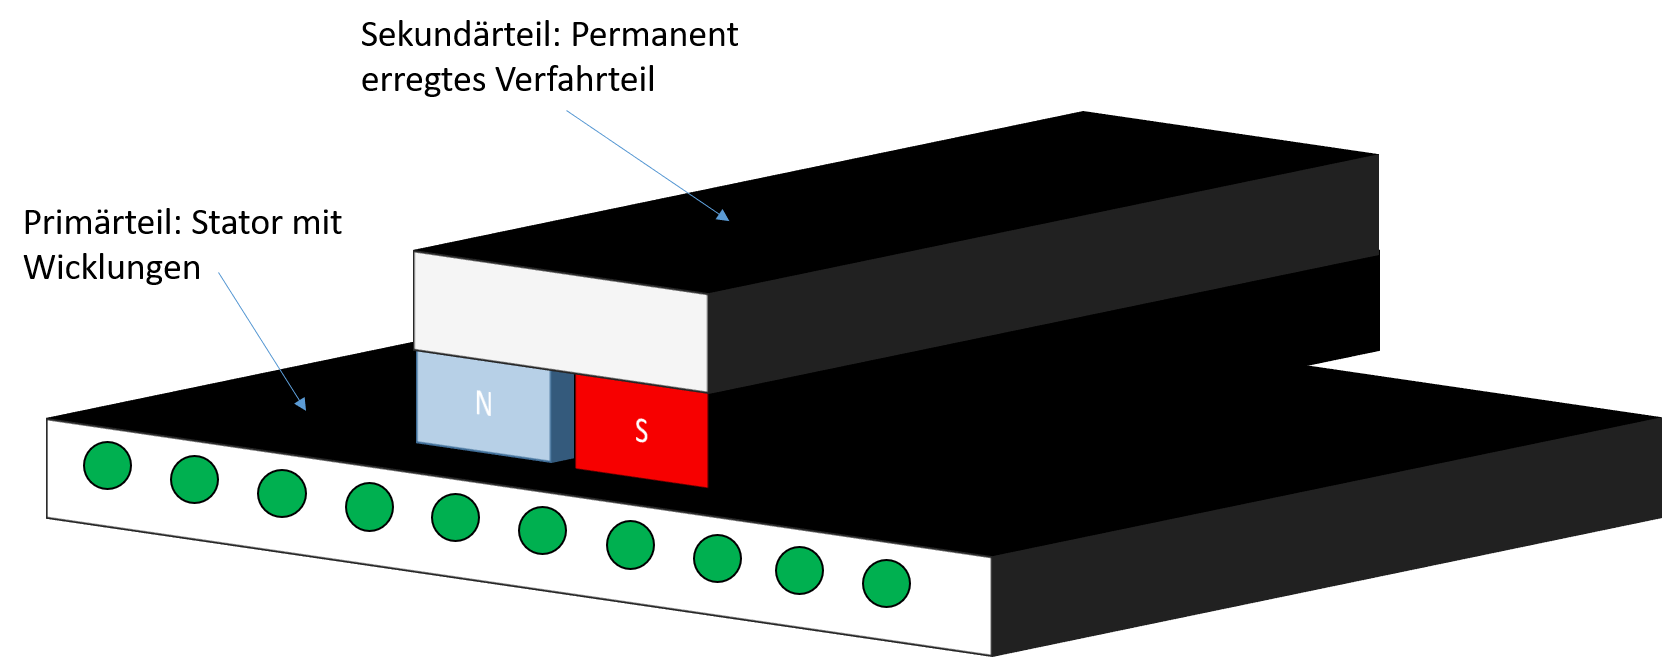 Aufbau eines synchronen Linearmotors nach Langstatorprinzip